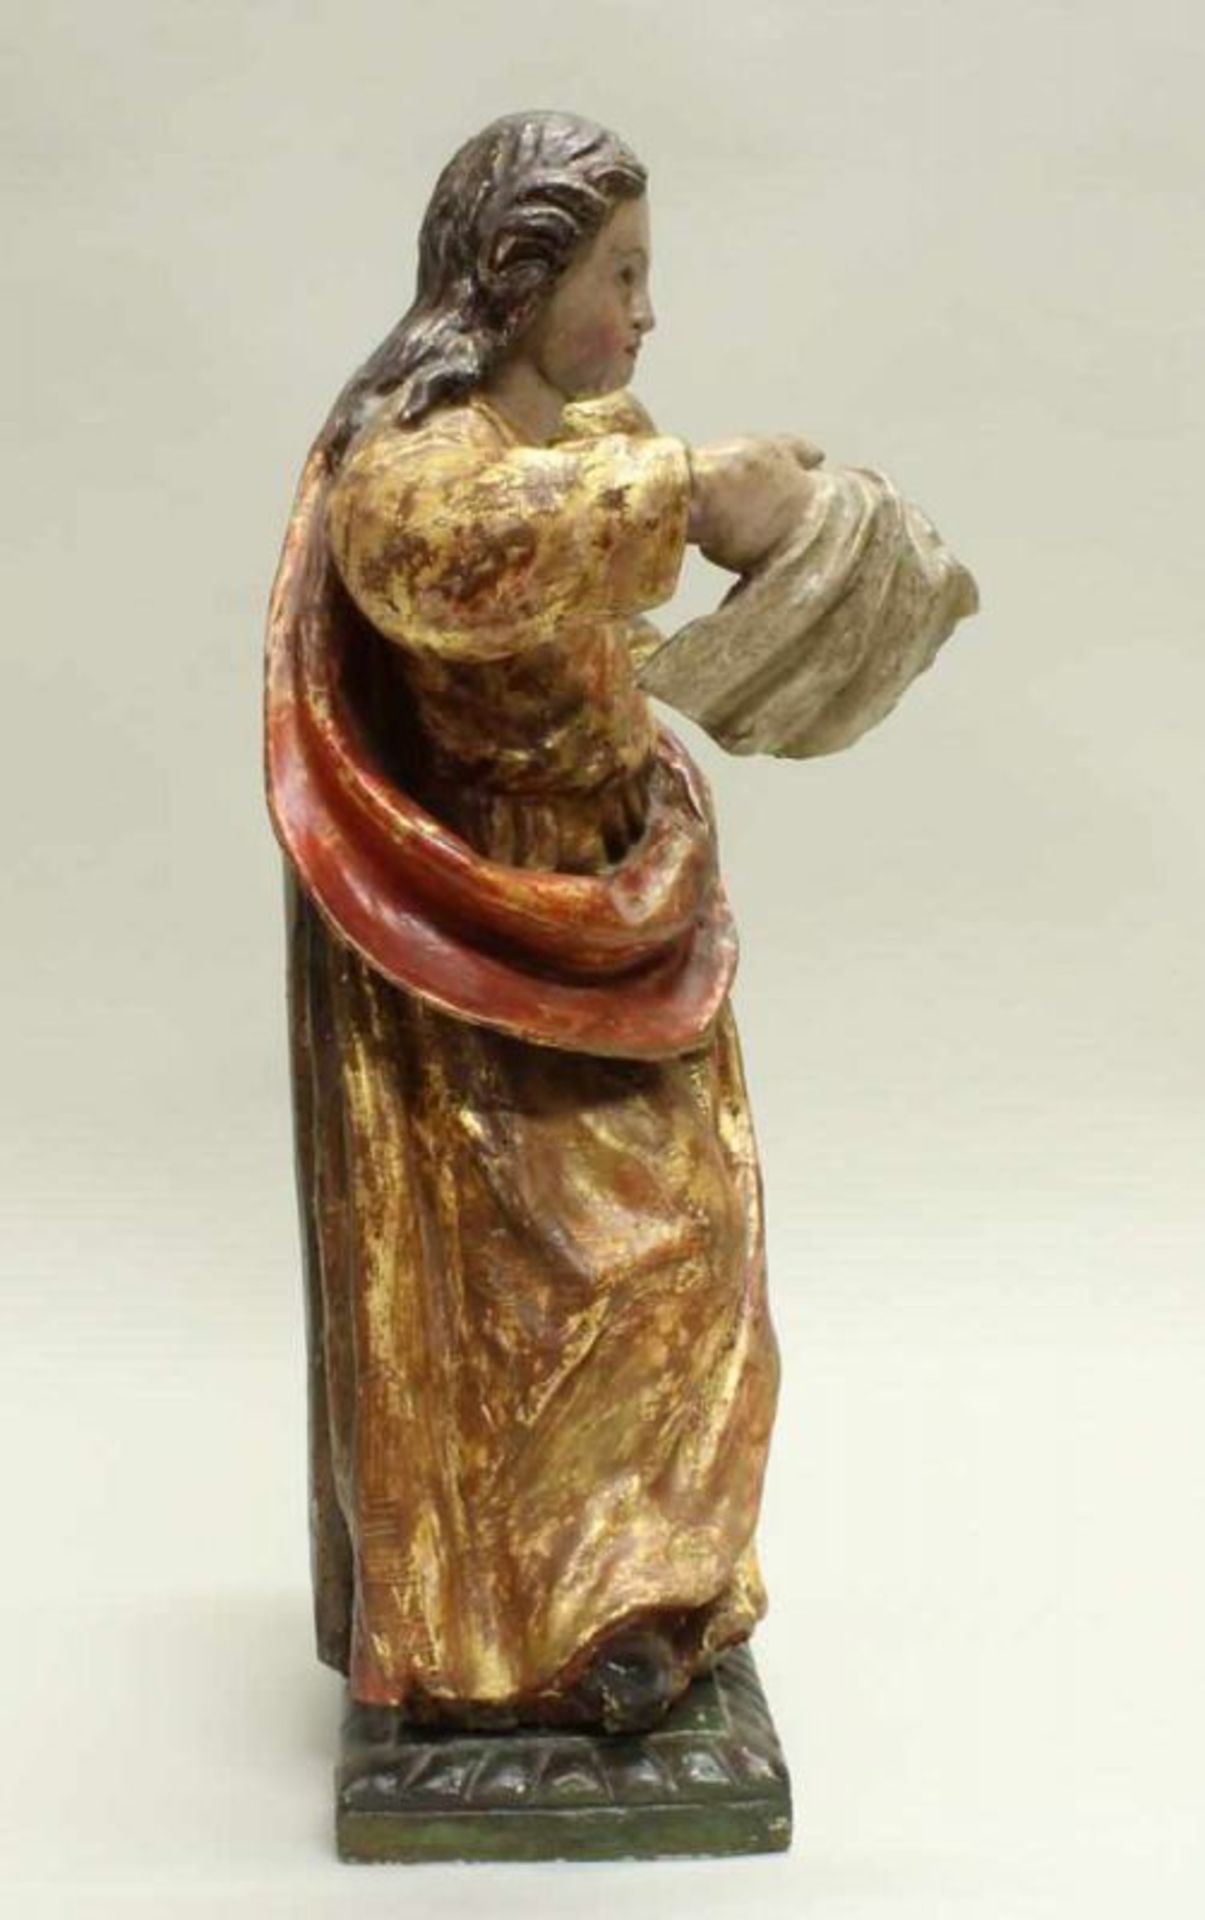 Skulptur, Holz, gefasst, "Maria Magdalena", Spanien, 17. Jh., 57 cm hoch, mit Teilen der - Image 5 of 5